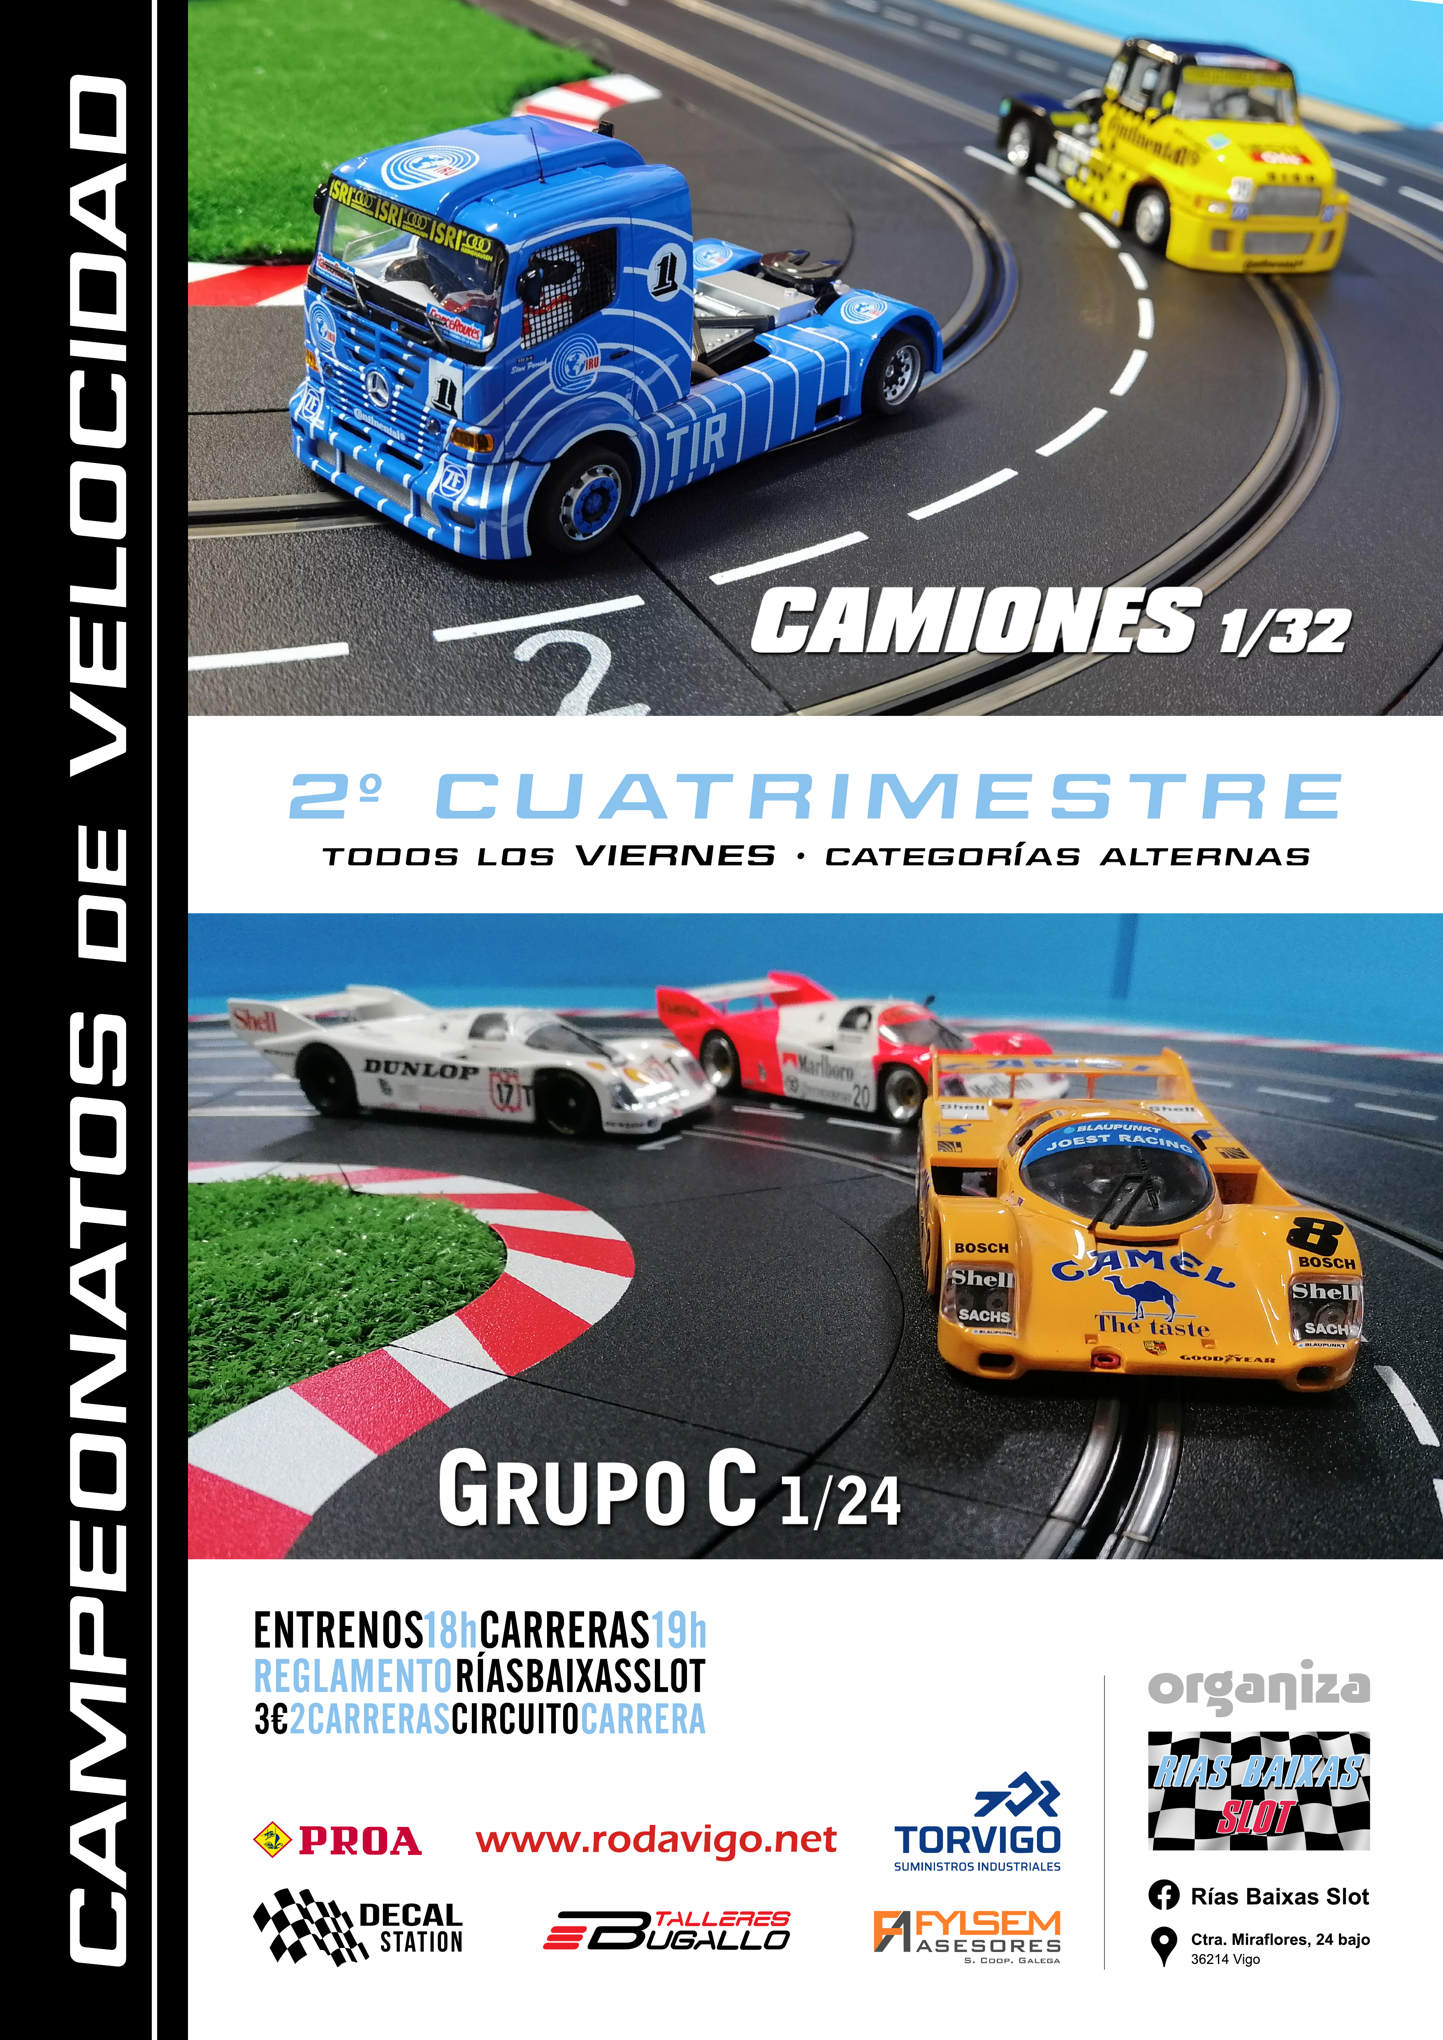 Campeonato de Camiones / Grupo C 1/24 (velocidad)